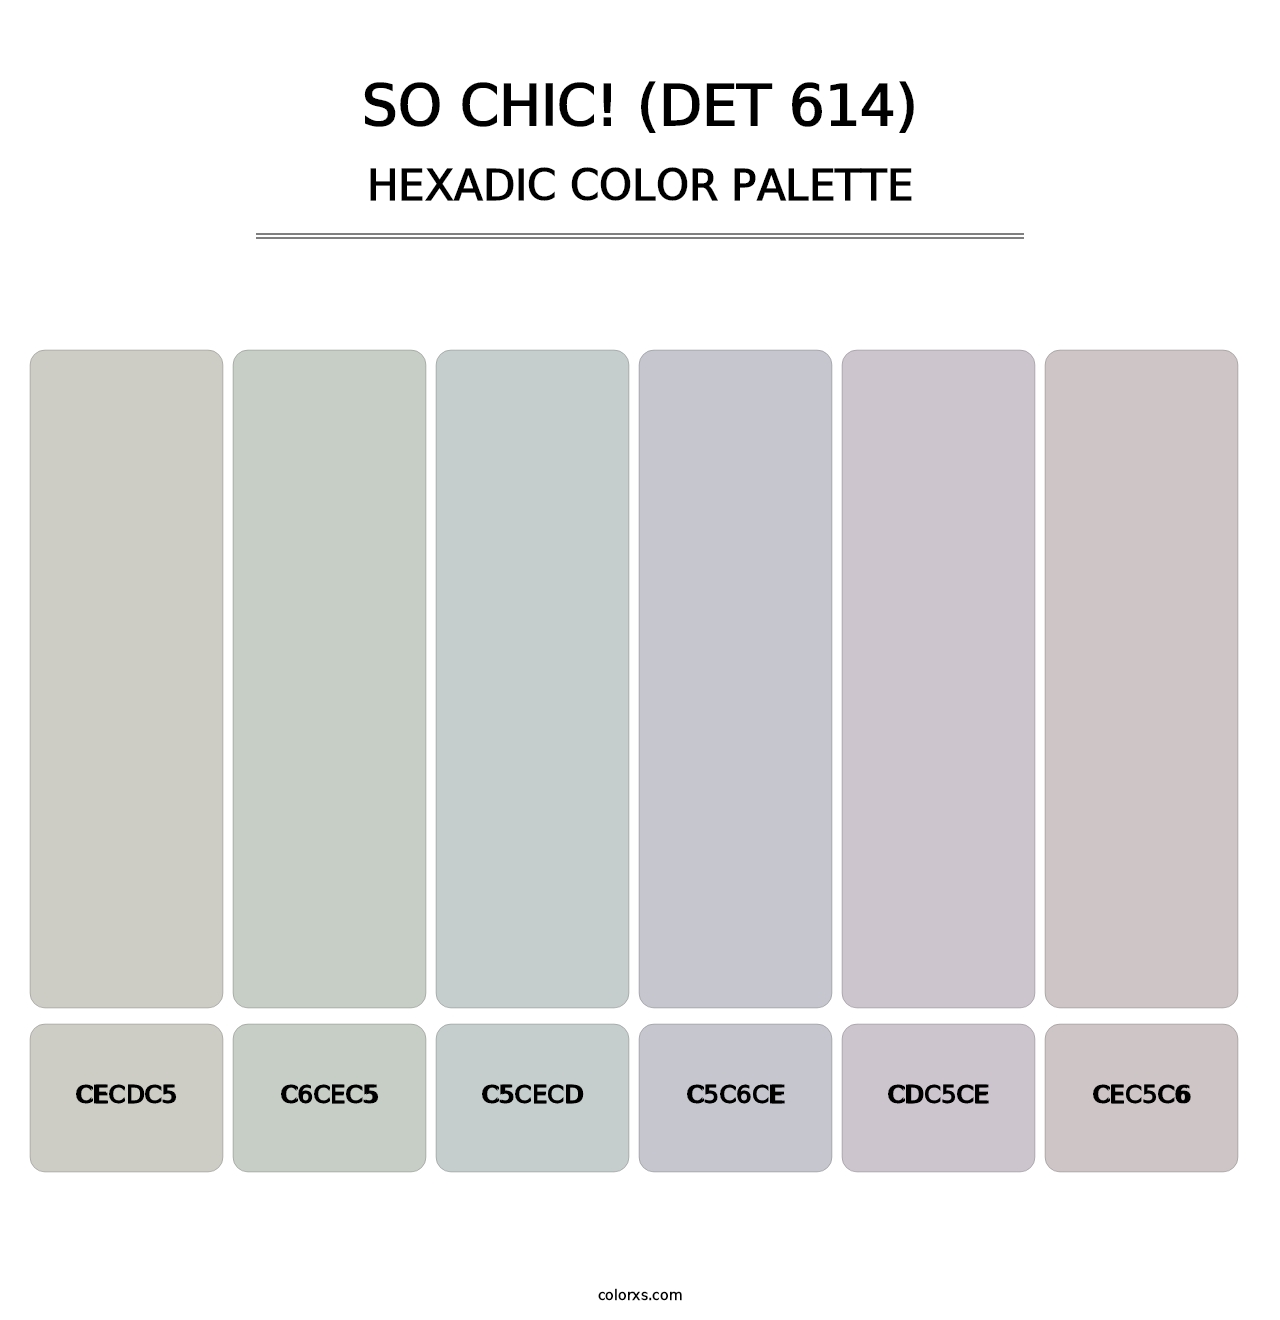 So Chic! (DET 614) - Hexadic Color Palette